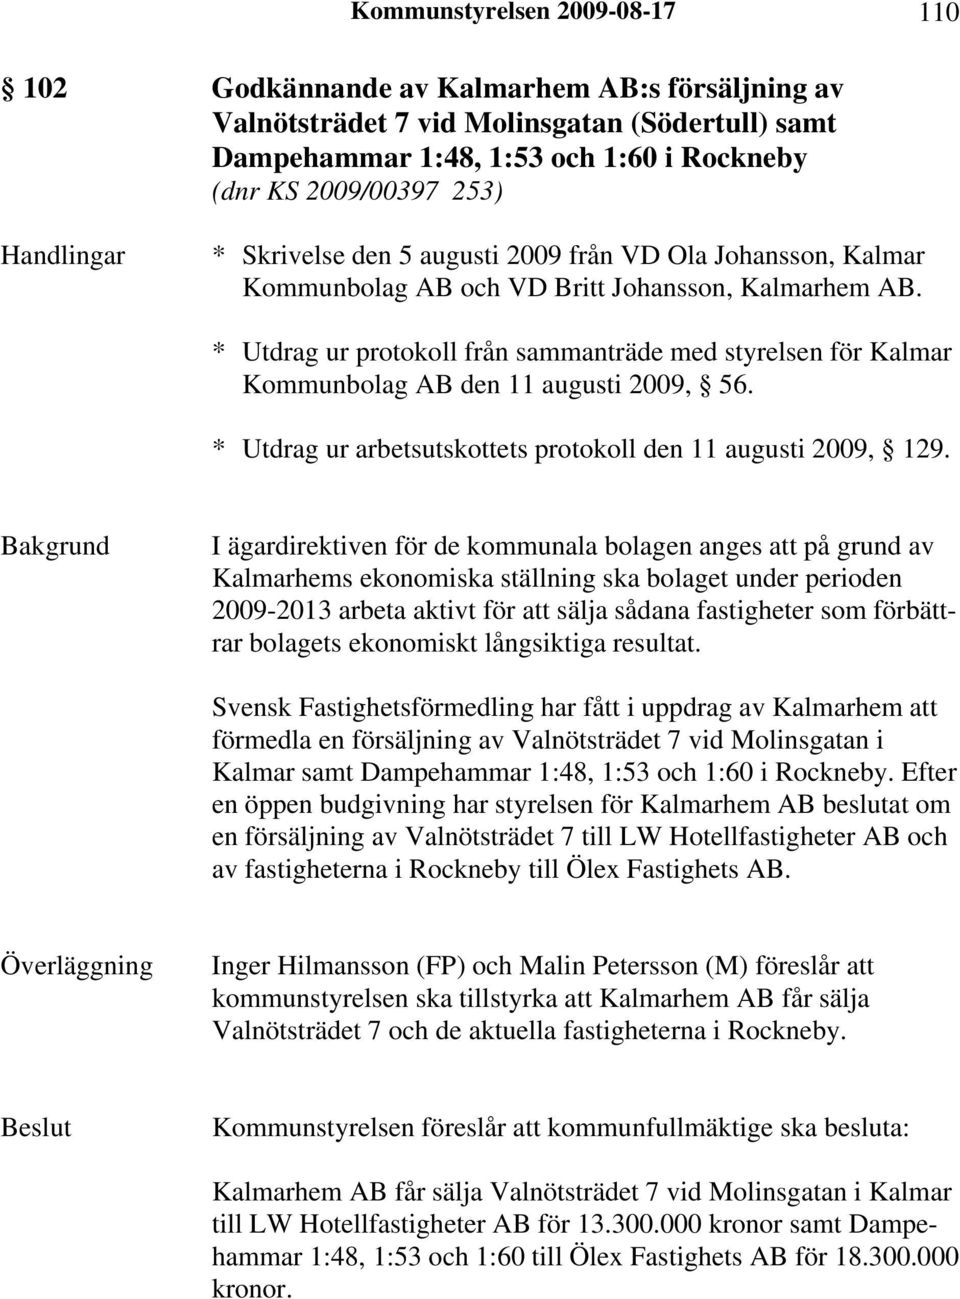 * Utdrag ur protokoll från sammanträde med styrelsen för Kalmar Kommunbolag AB den 11 augusti 2009, 56. * Utdrag ur arbetsutskottets protokoll den 11 augusti 2009, 129.